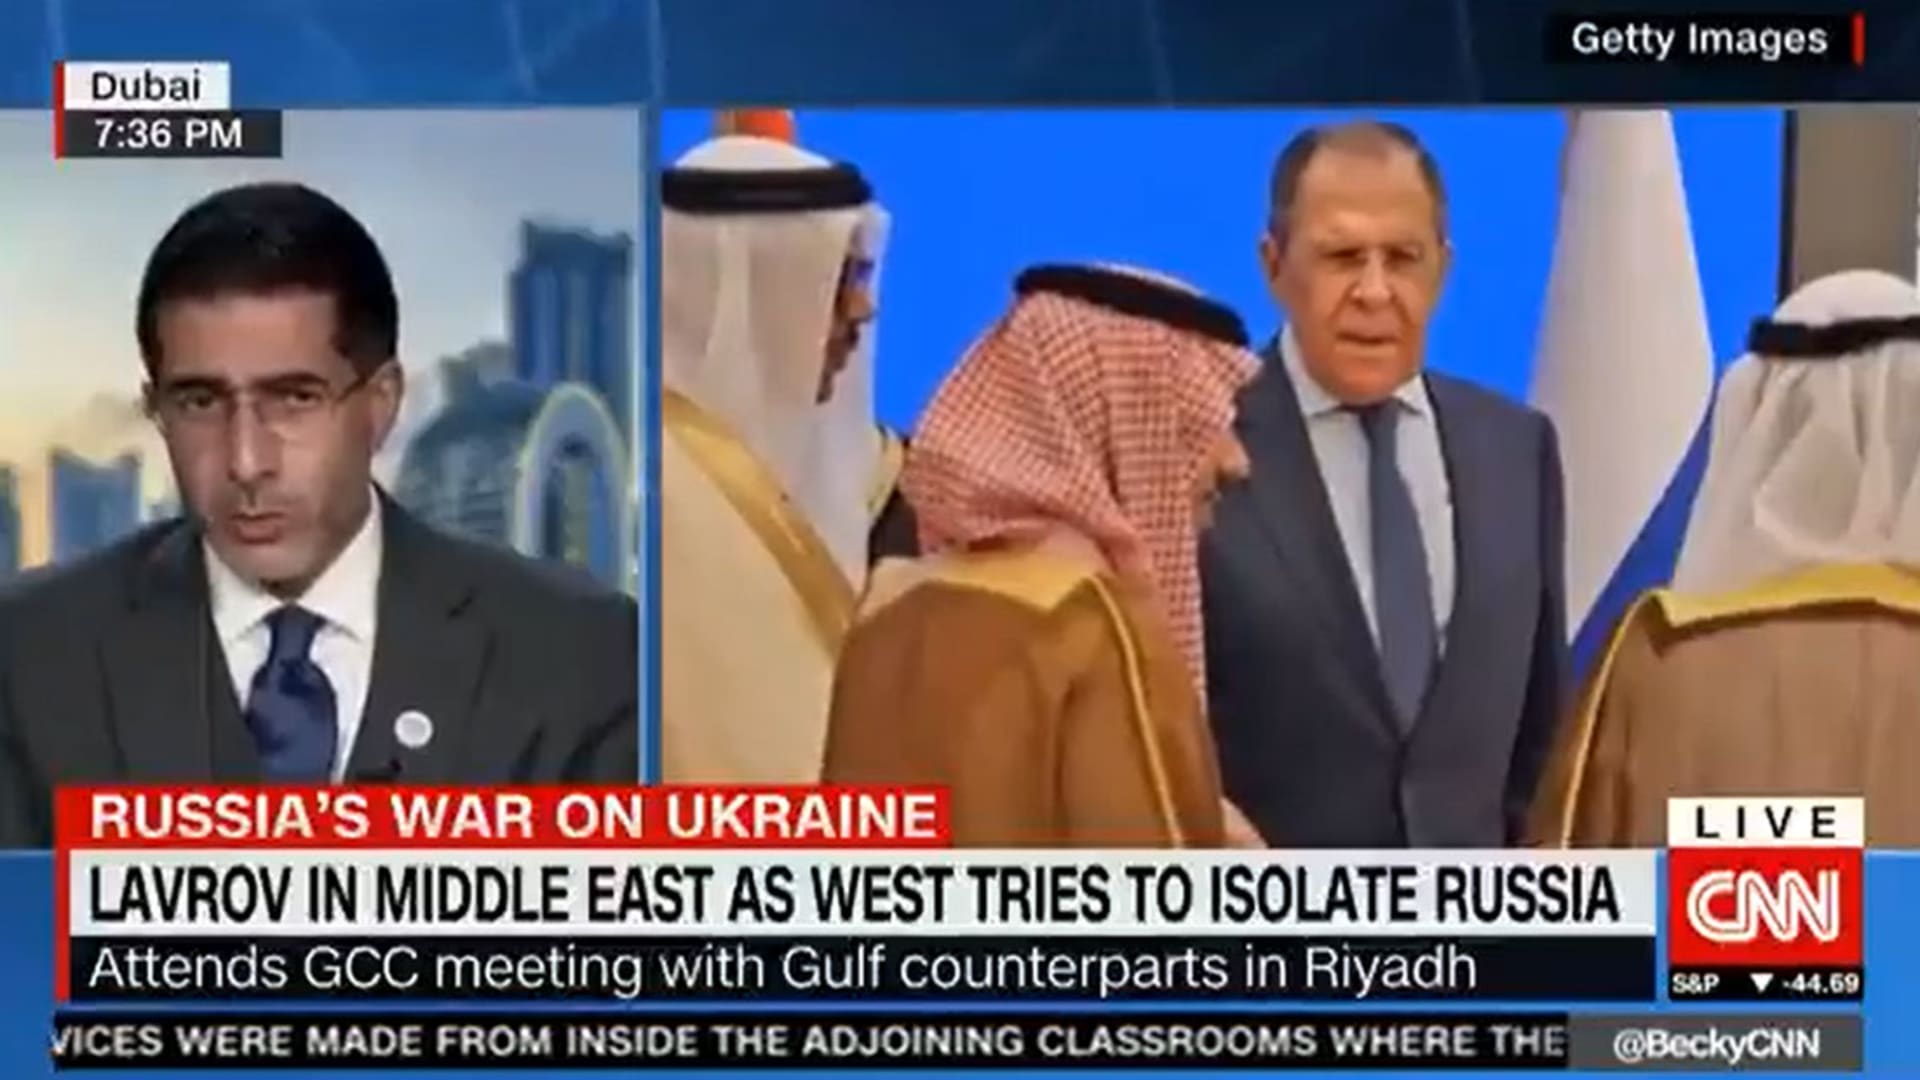 ضغط السعودية على روسيا.. لماذا لا تبدأ أوروبا بنفسها مع دفعها مليار دولار يوميا لموسكو؟ إعلامي يتساءل بمقابلة مع CNN